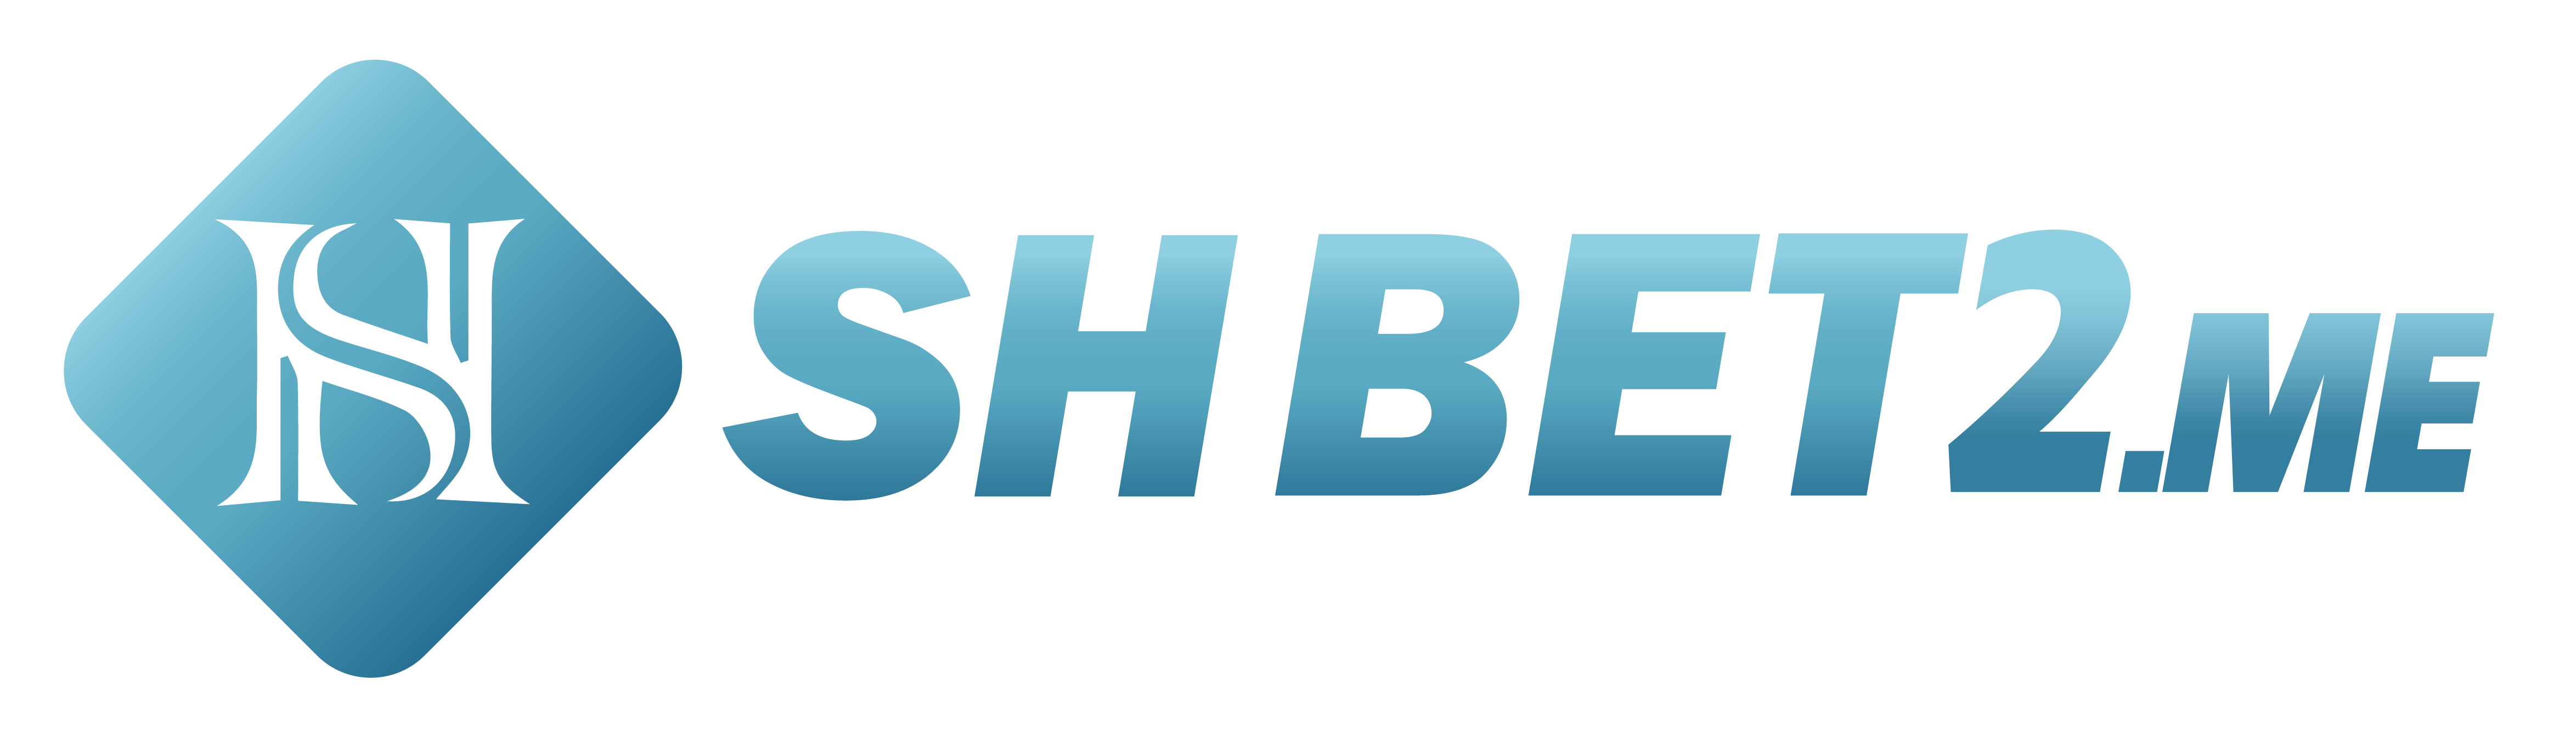 logo-f8bet-host